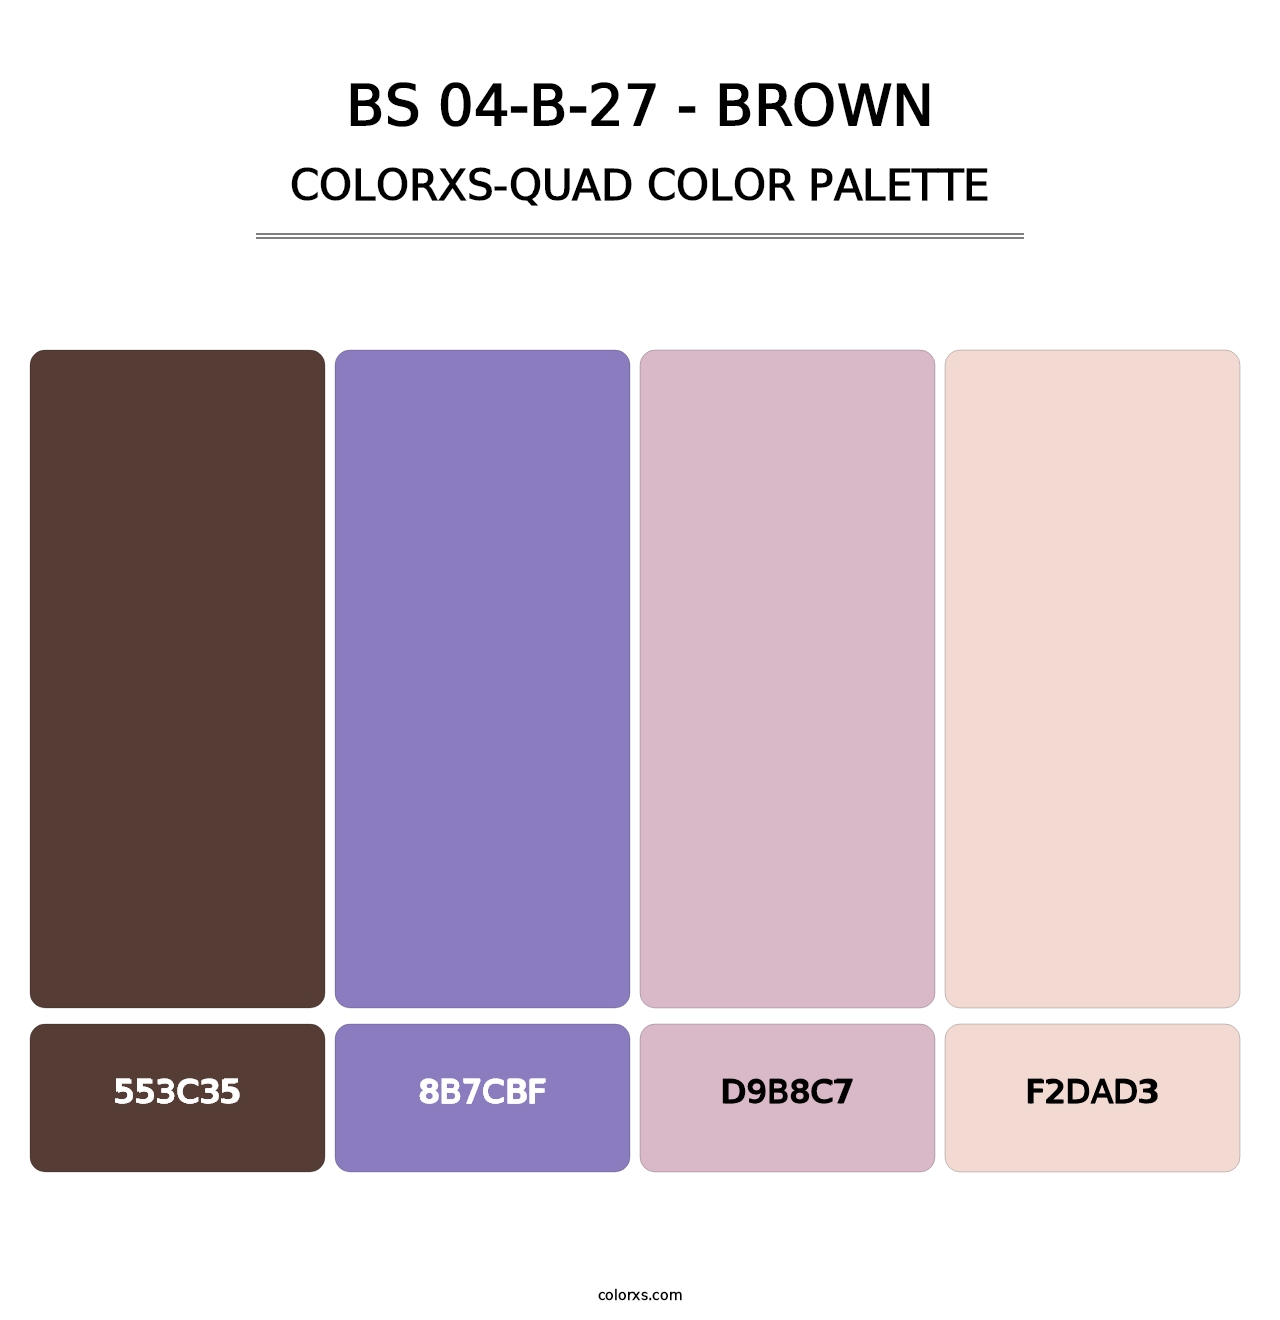 BS 04-B-27 - Brown - Colorxs Quad Palette